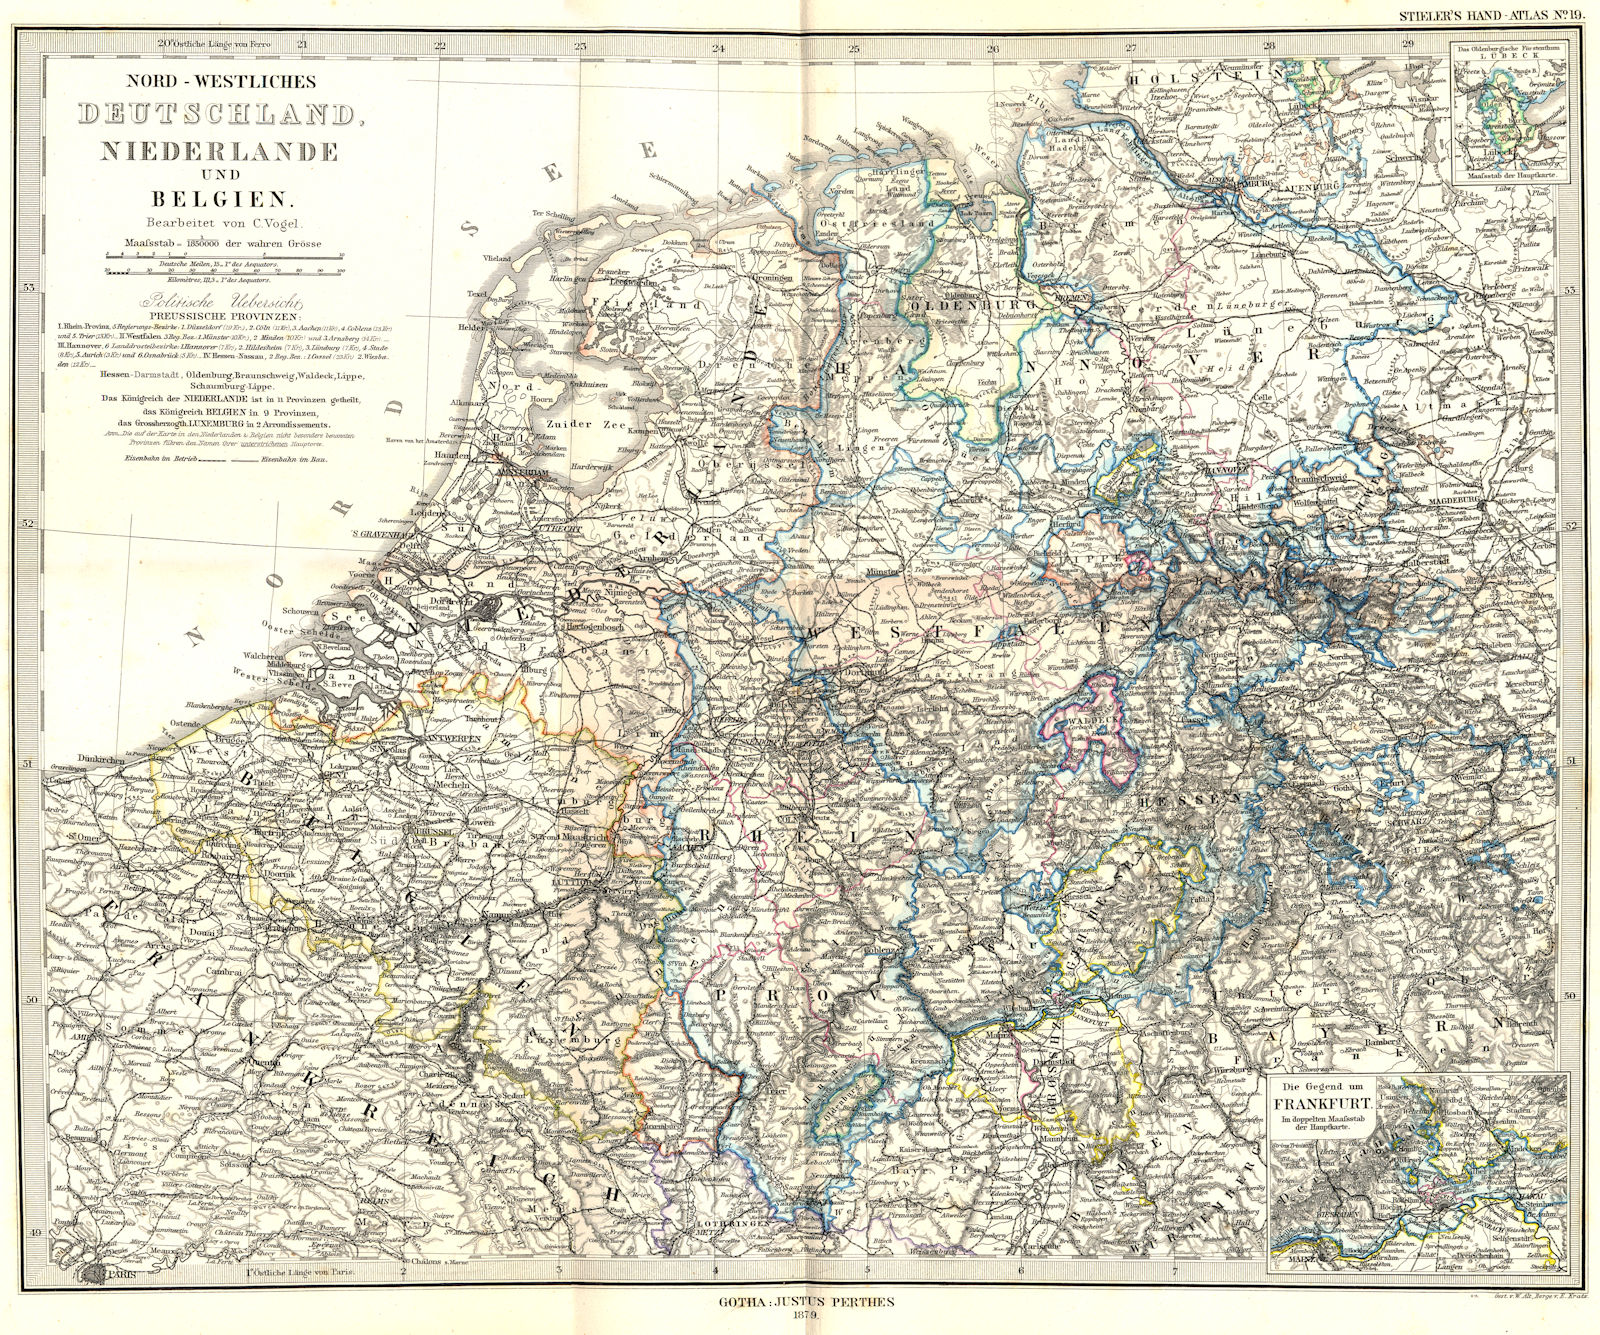 DEUTSCHLAND. Niederlande Belgien; Frankfurt 1879 old antique map plan chart